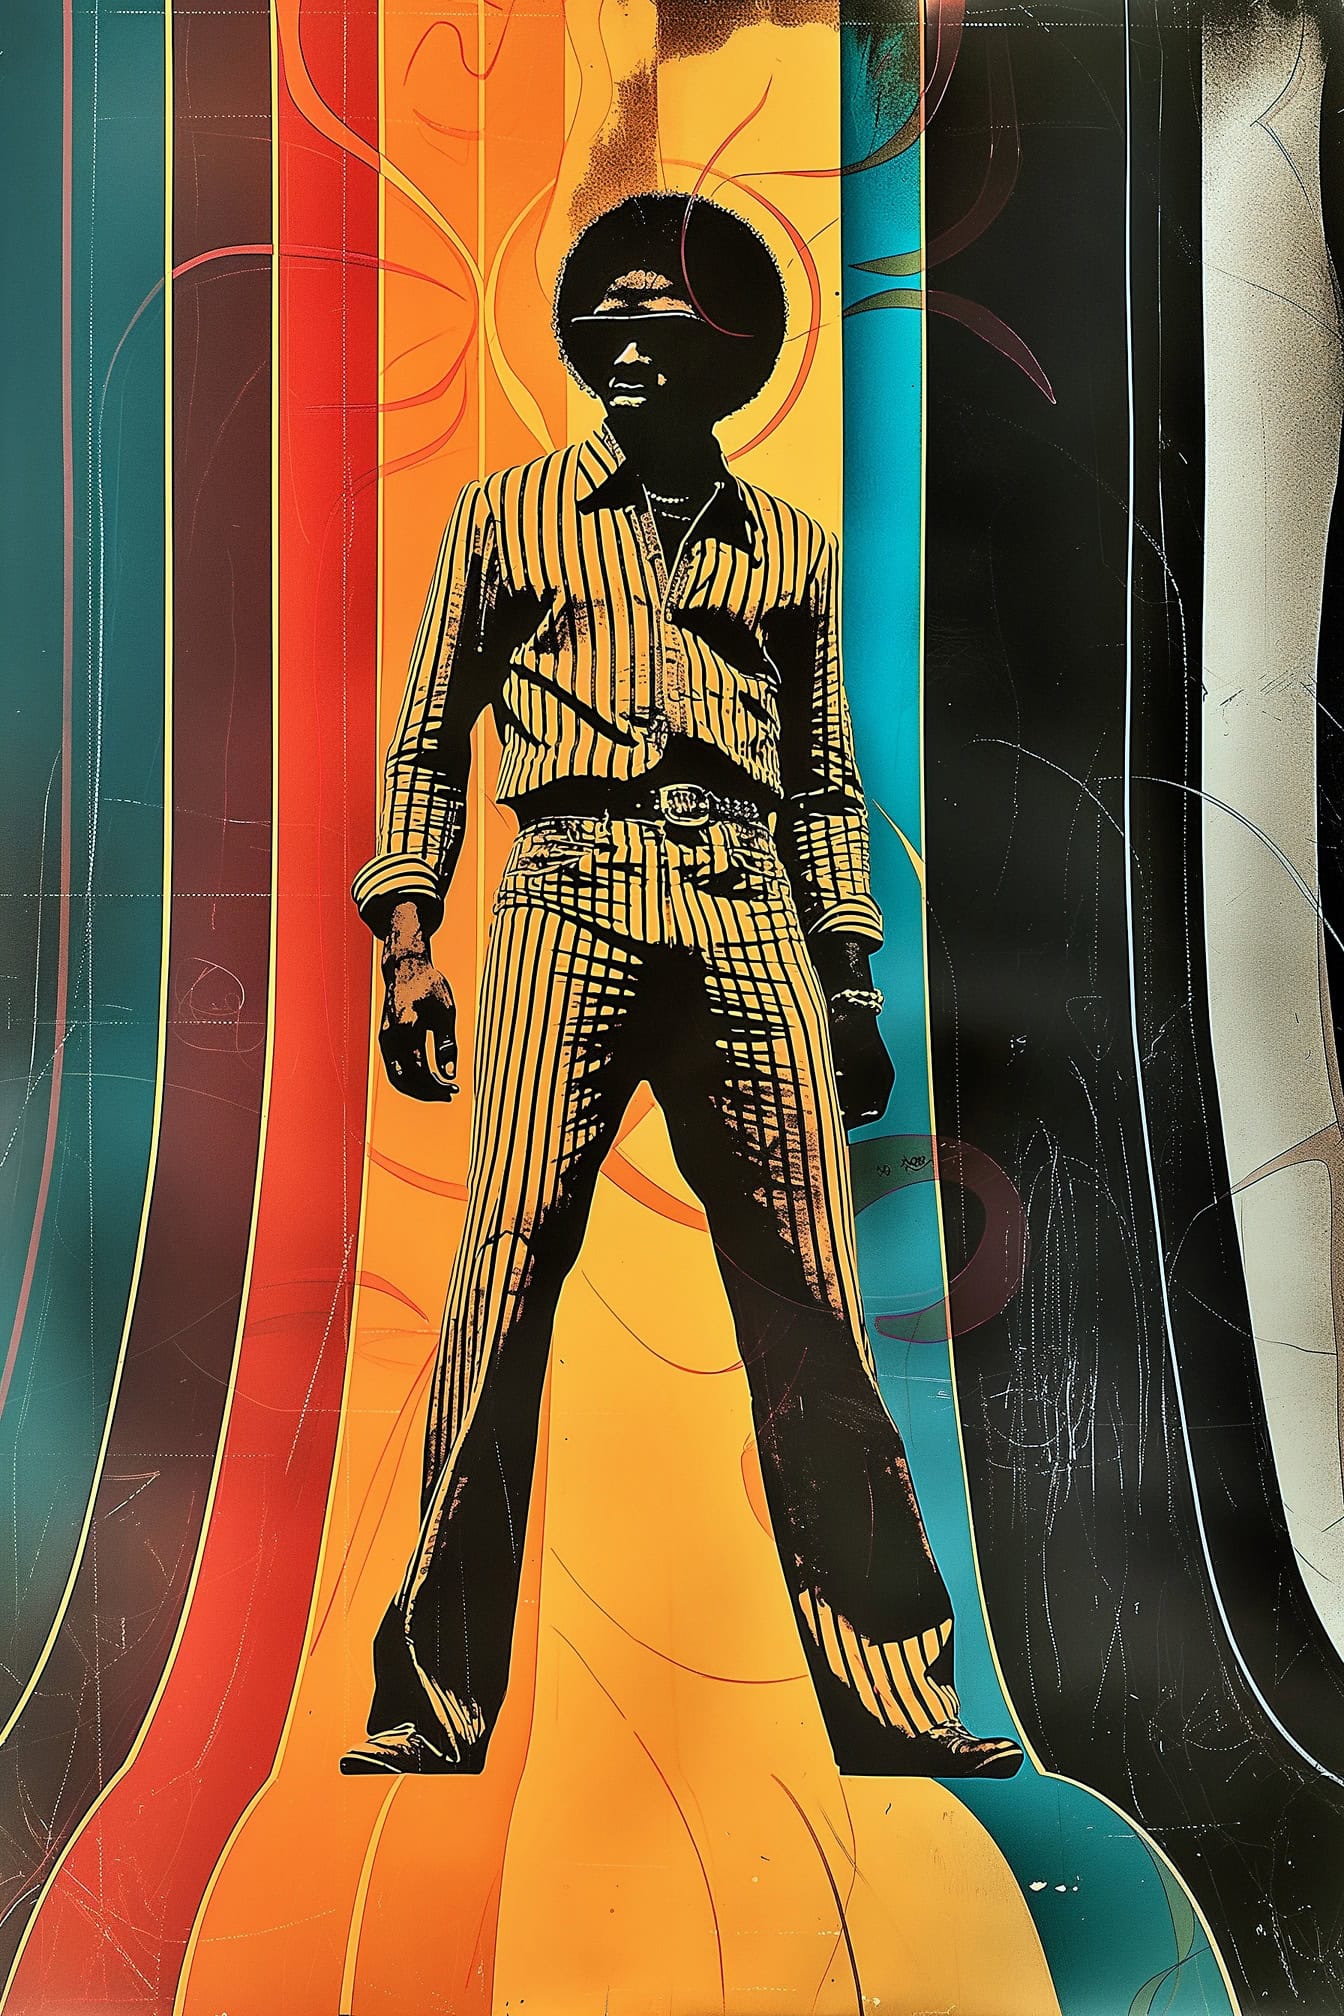 Affiche de style rétro des années 70 d’un homme avec une coiffure afro avec un fond rayé coloré